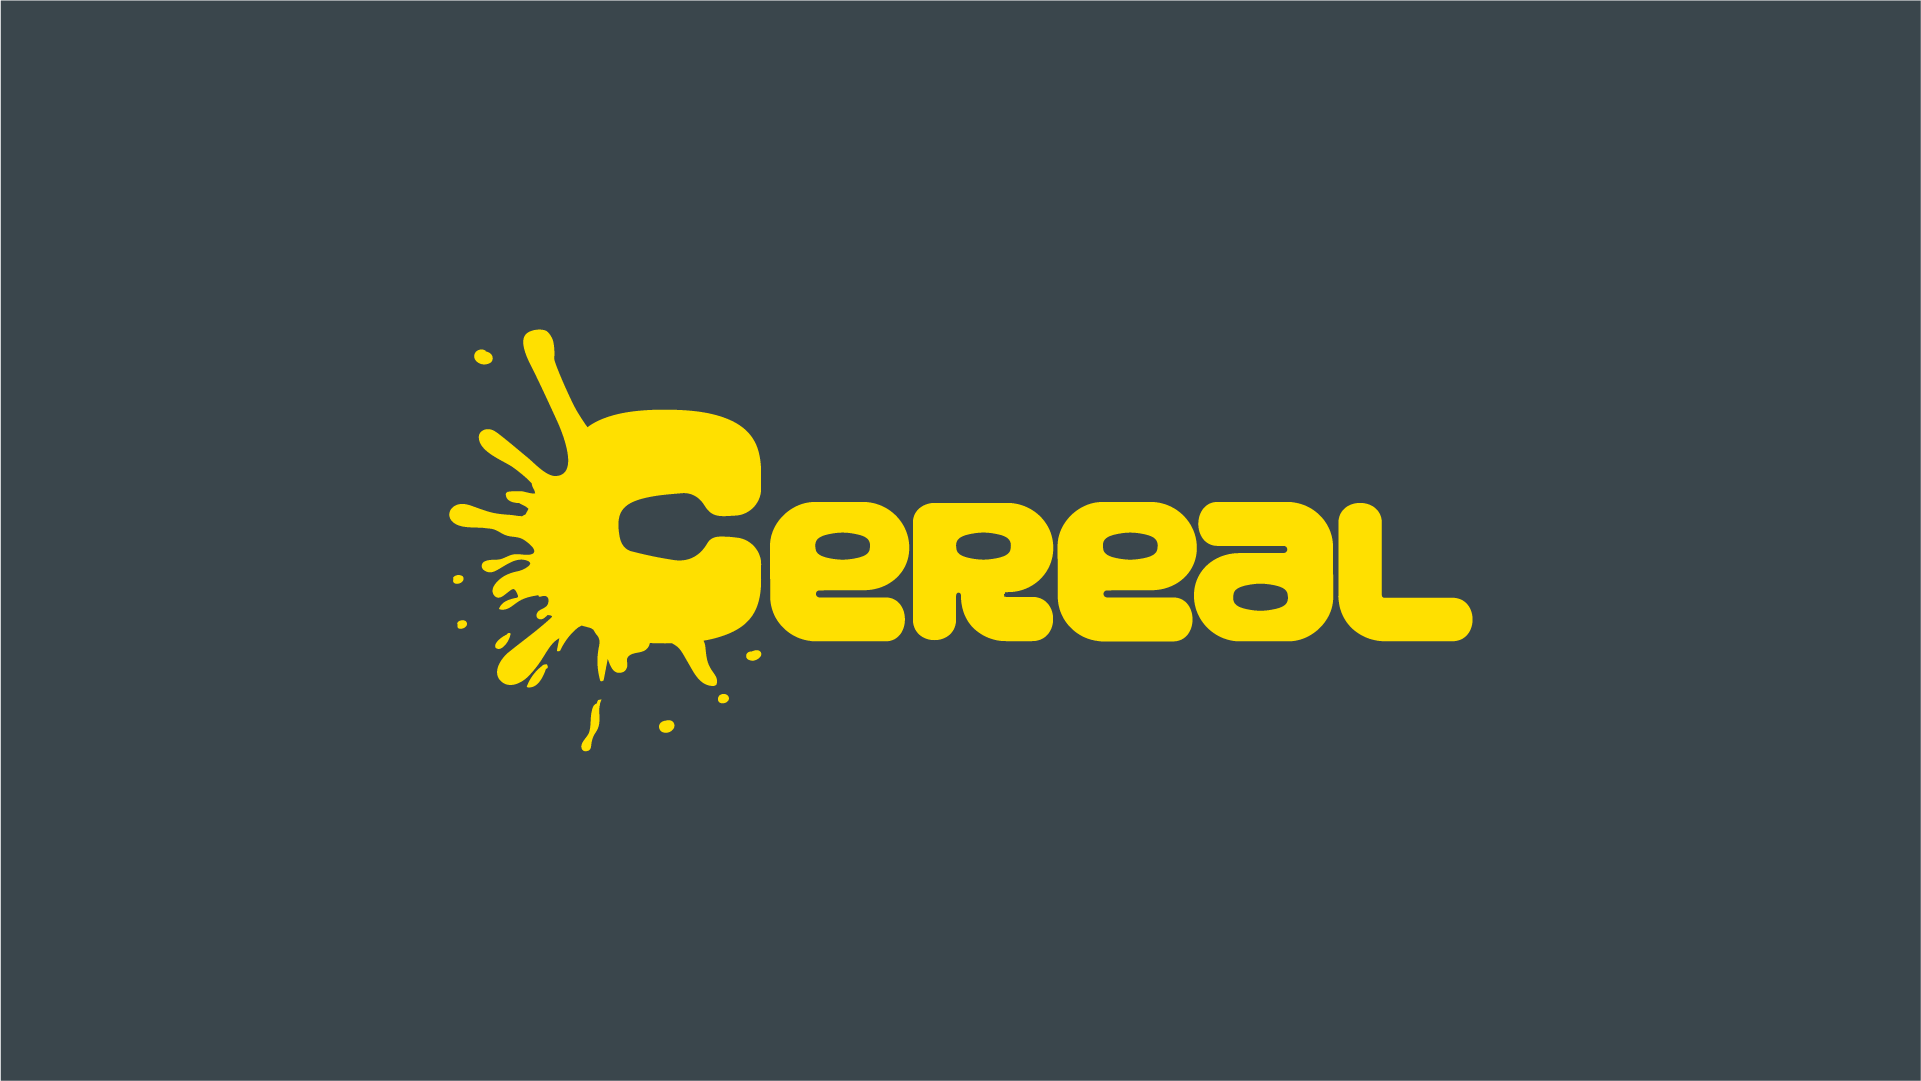 cereal-bkg.png